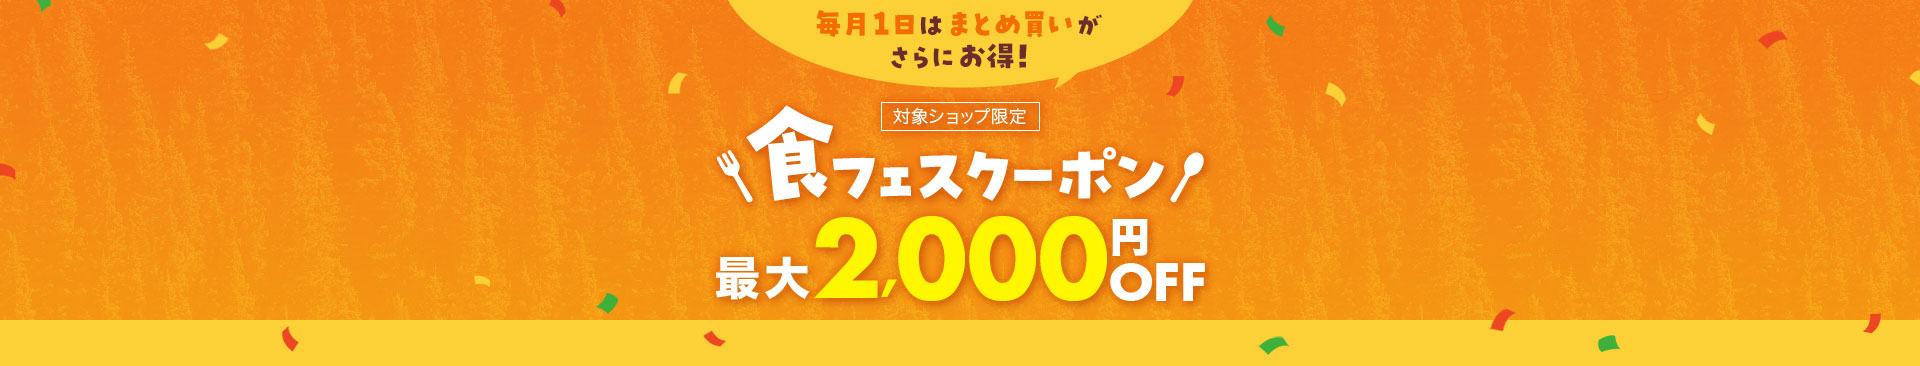 食フェスクーポン最大2,000円OFF